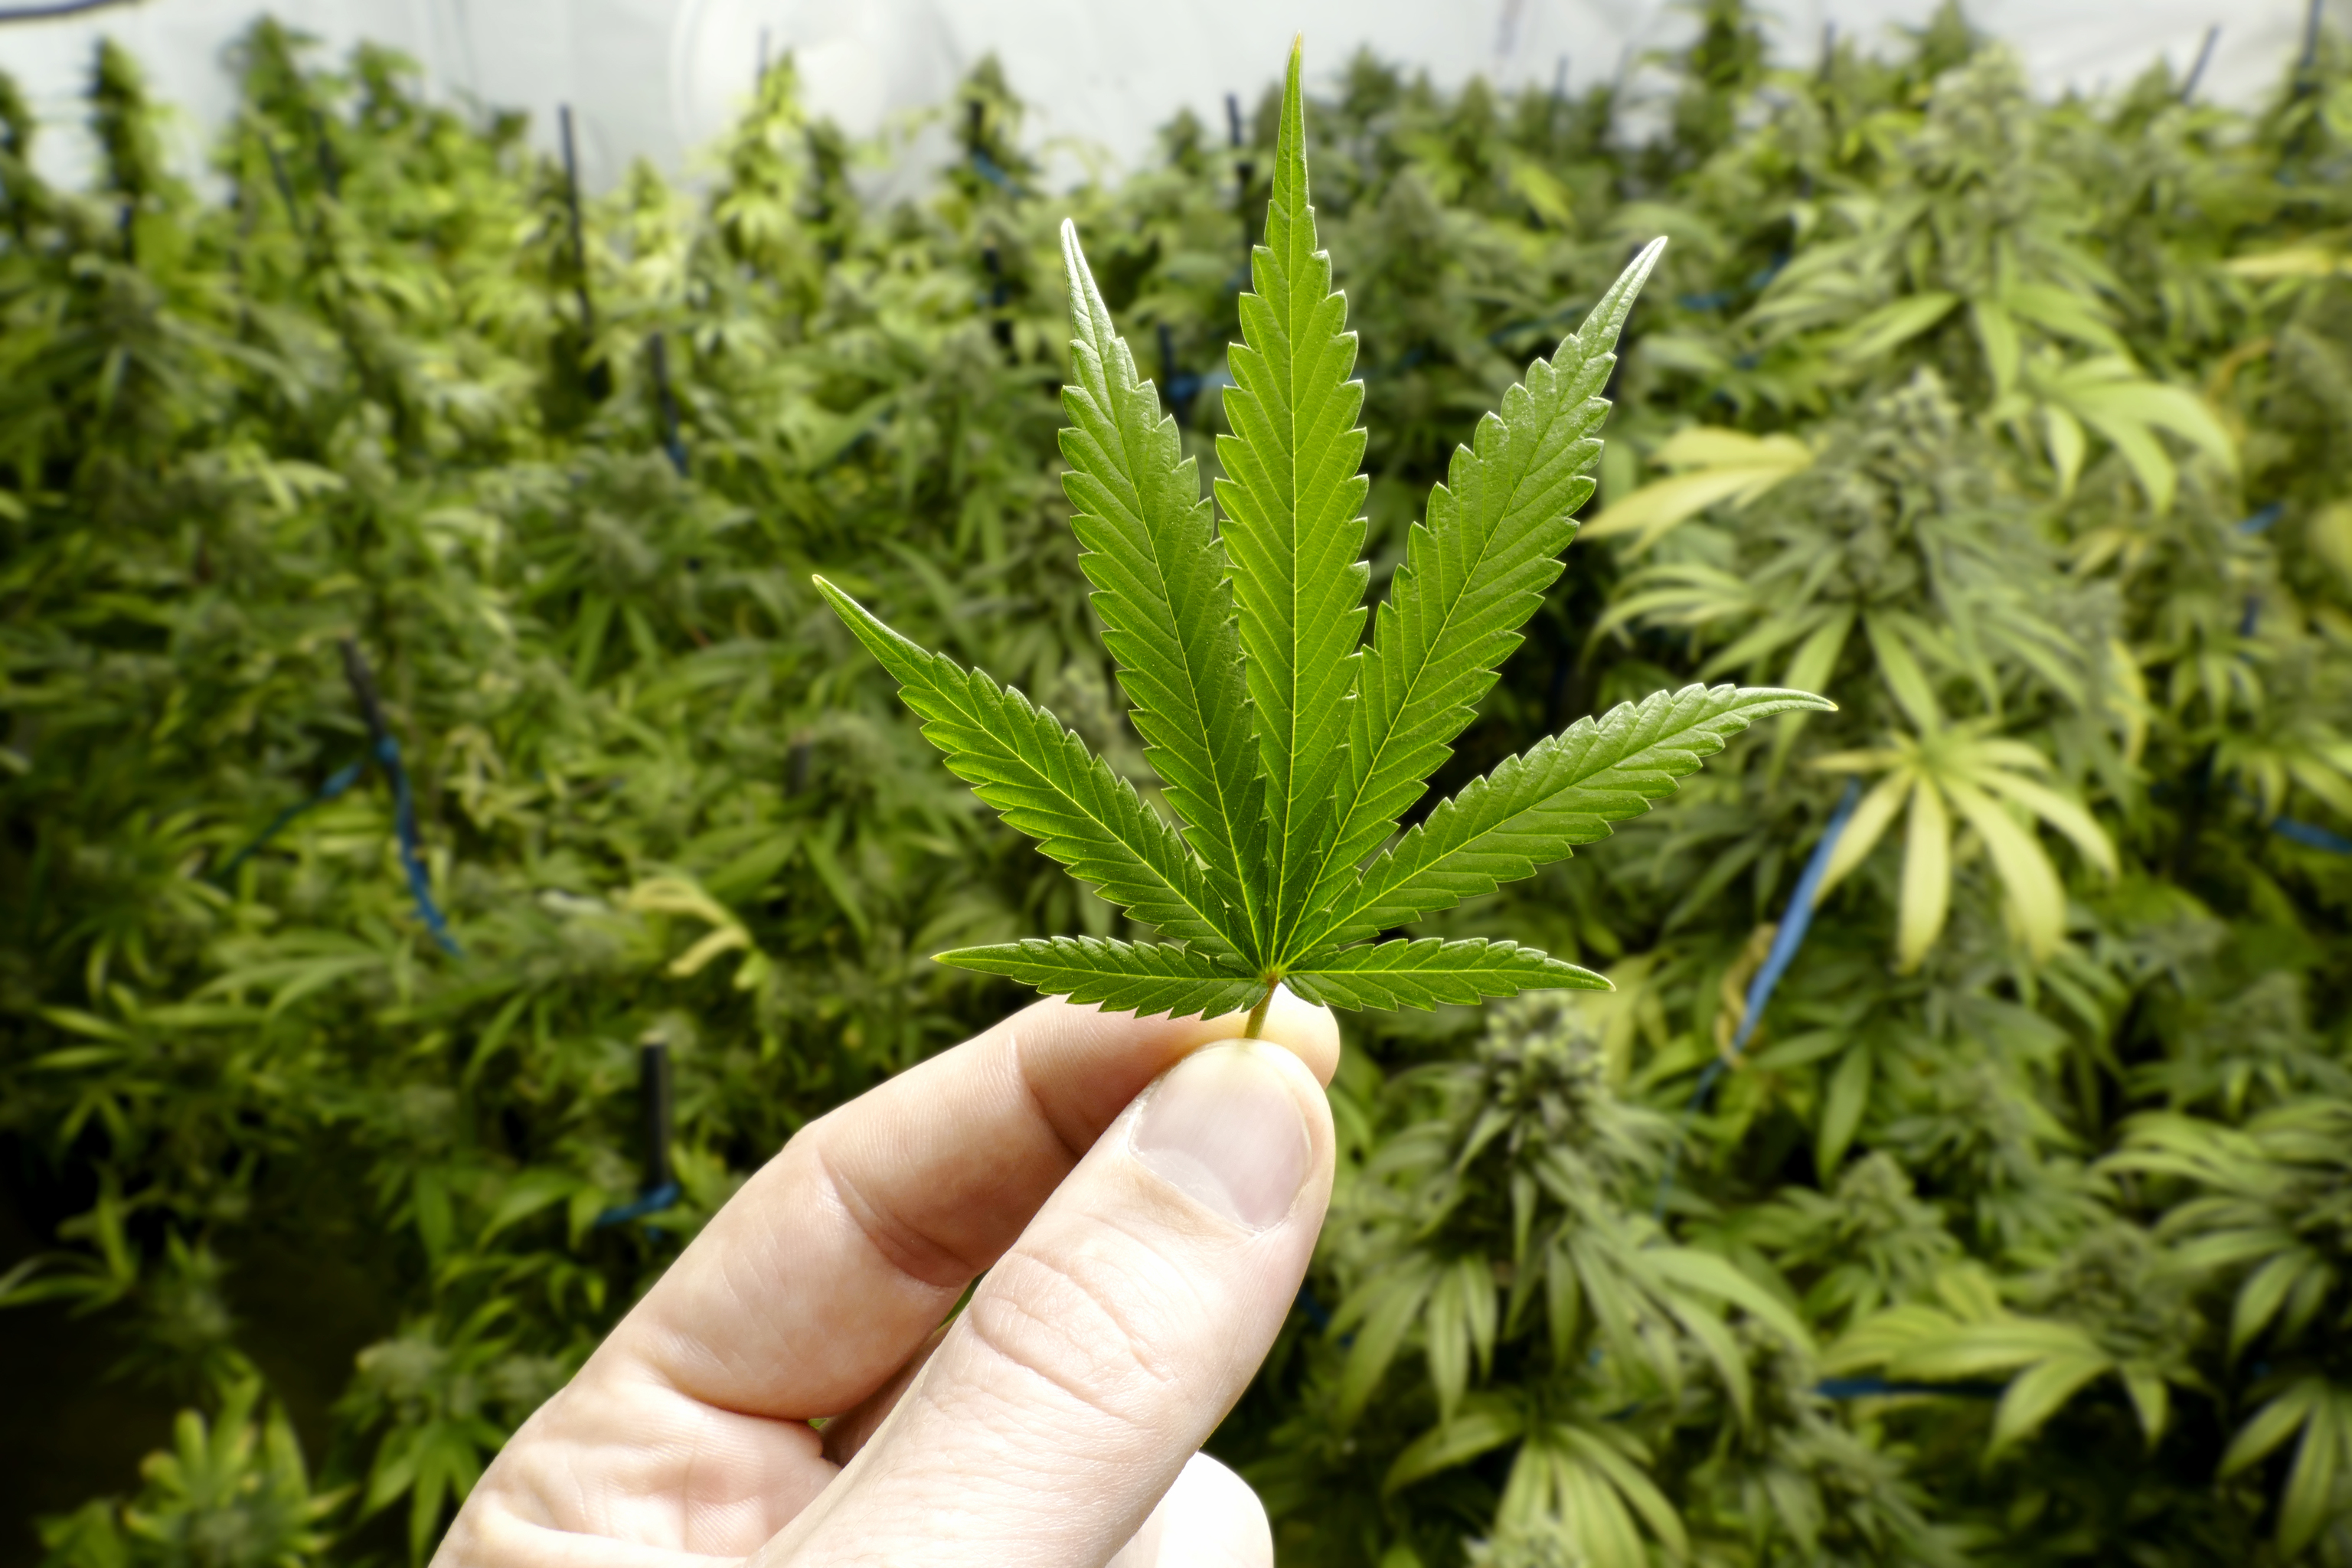 Una mano sujetando pequeñas hojas de marihuana, con plantas de cannabis en segundo plano.